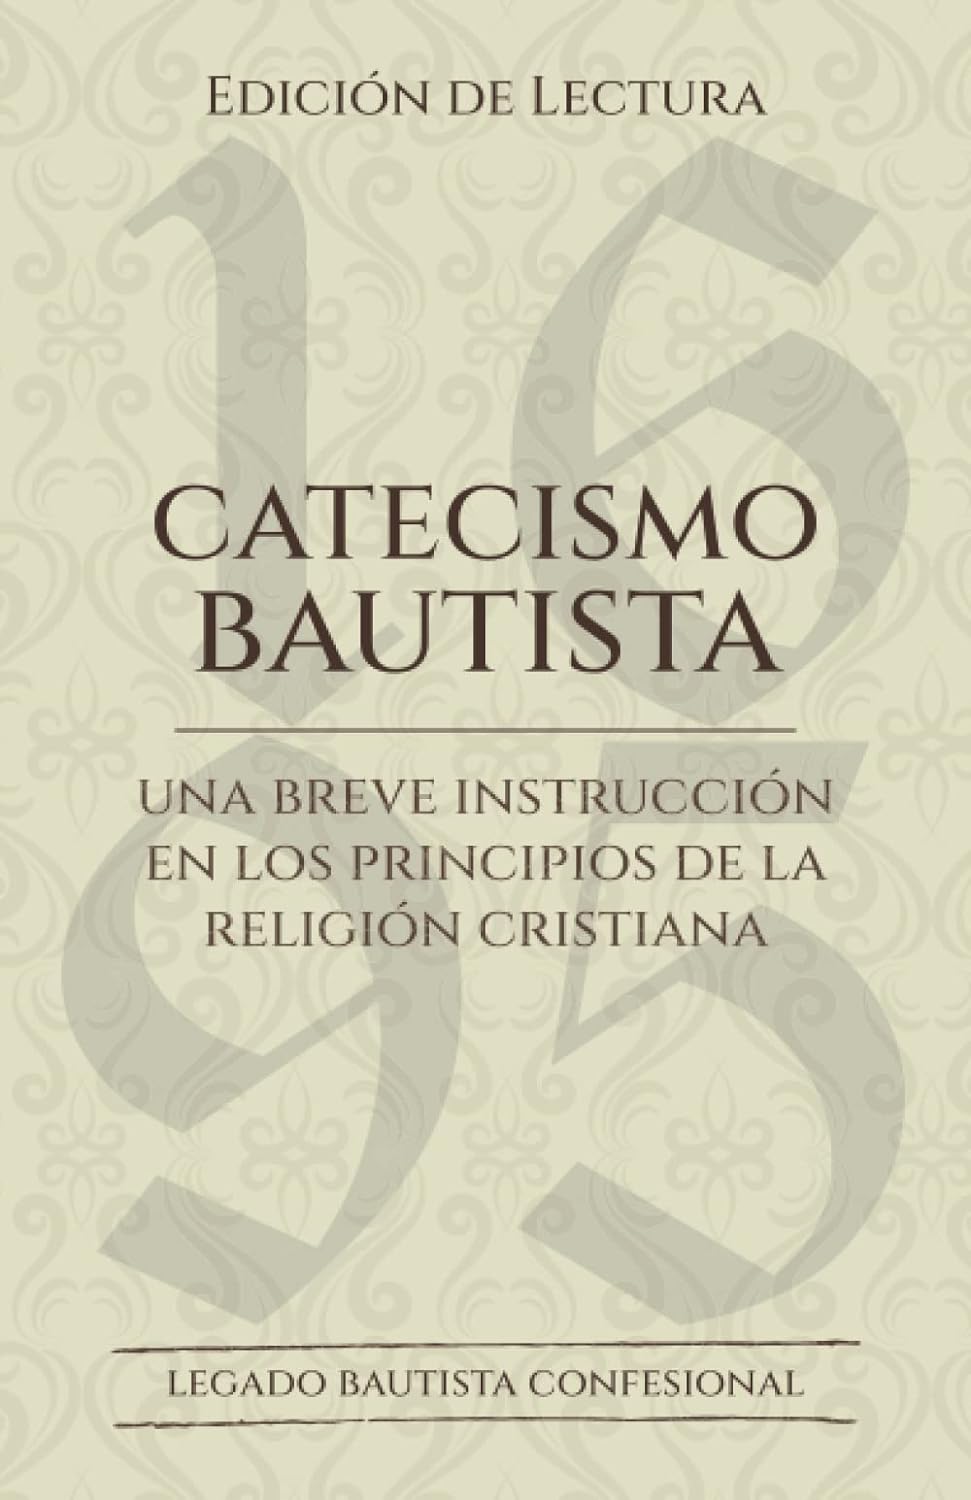 Catecismo bautista edición de lectura / Una breve introducción en los principios de la religión cristiana